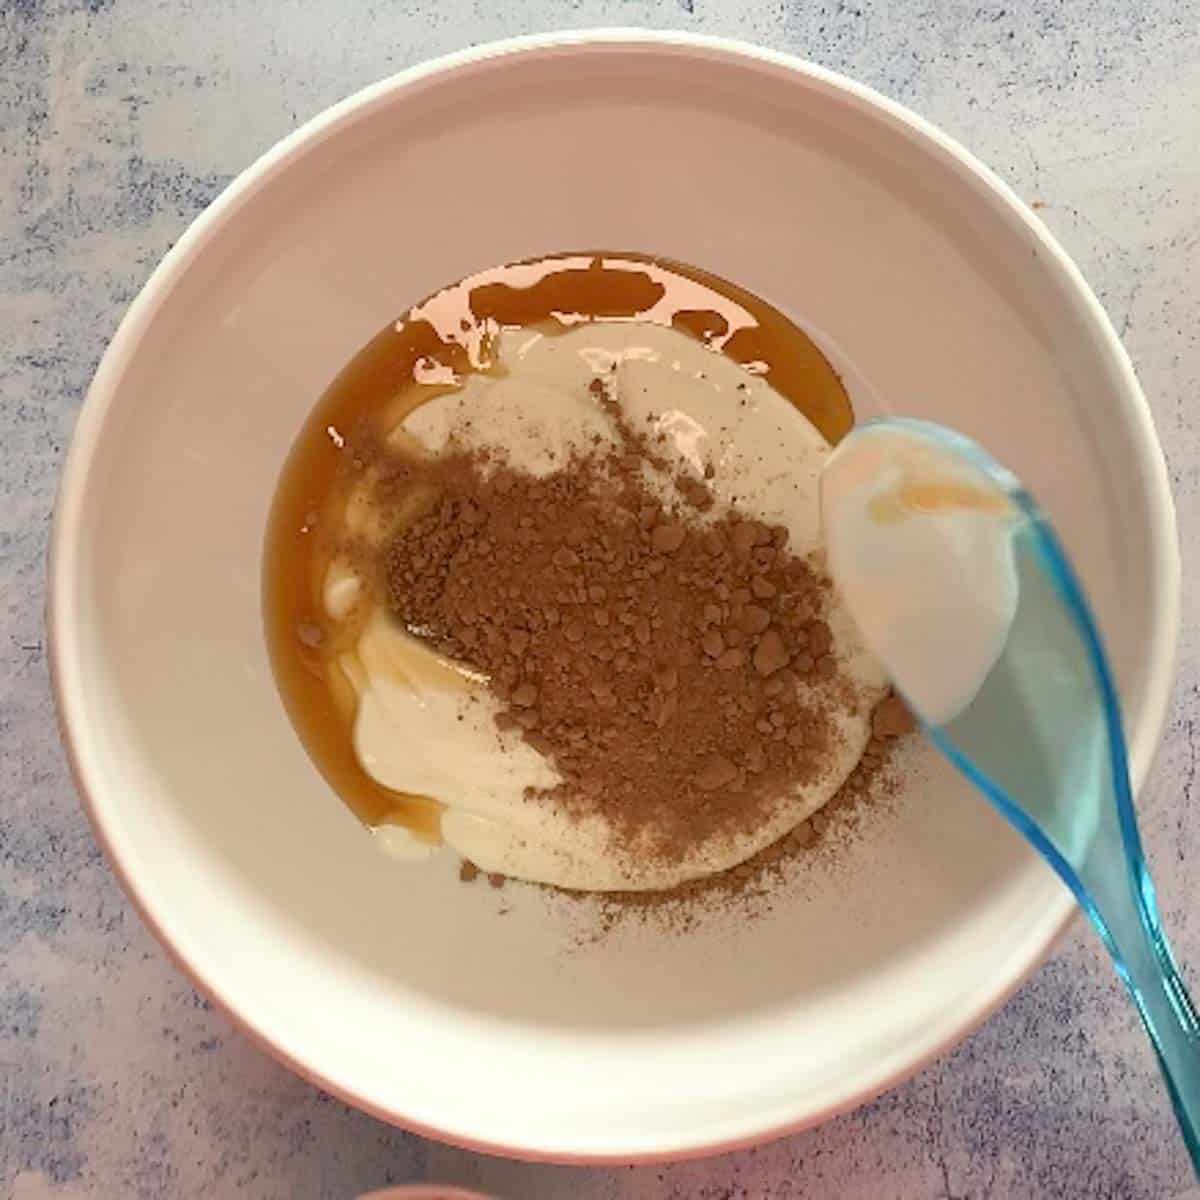 yogurt, chocolate powder, maple syrup in a bowl